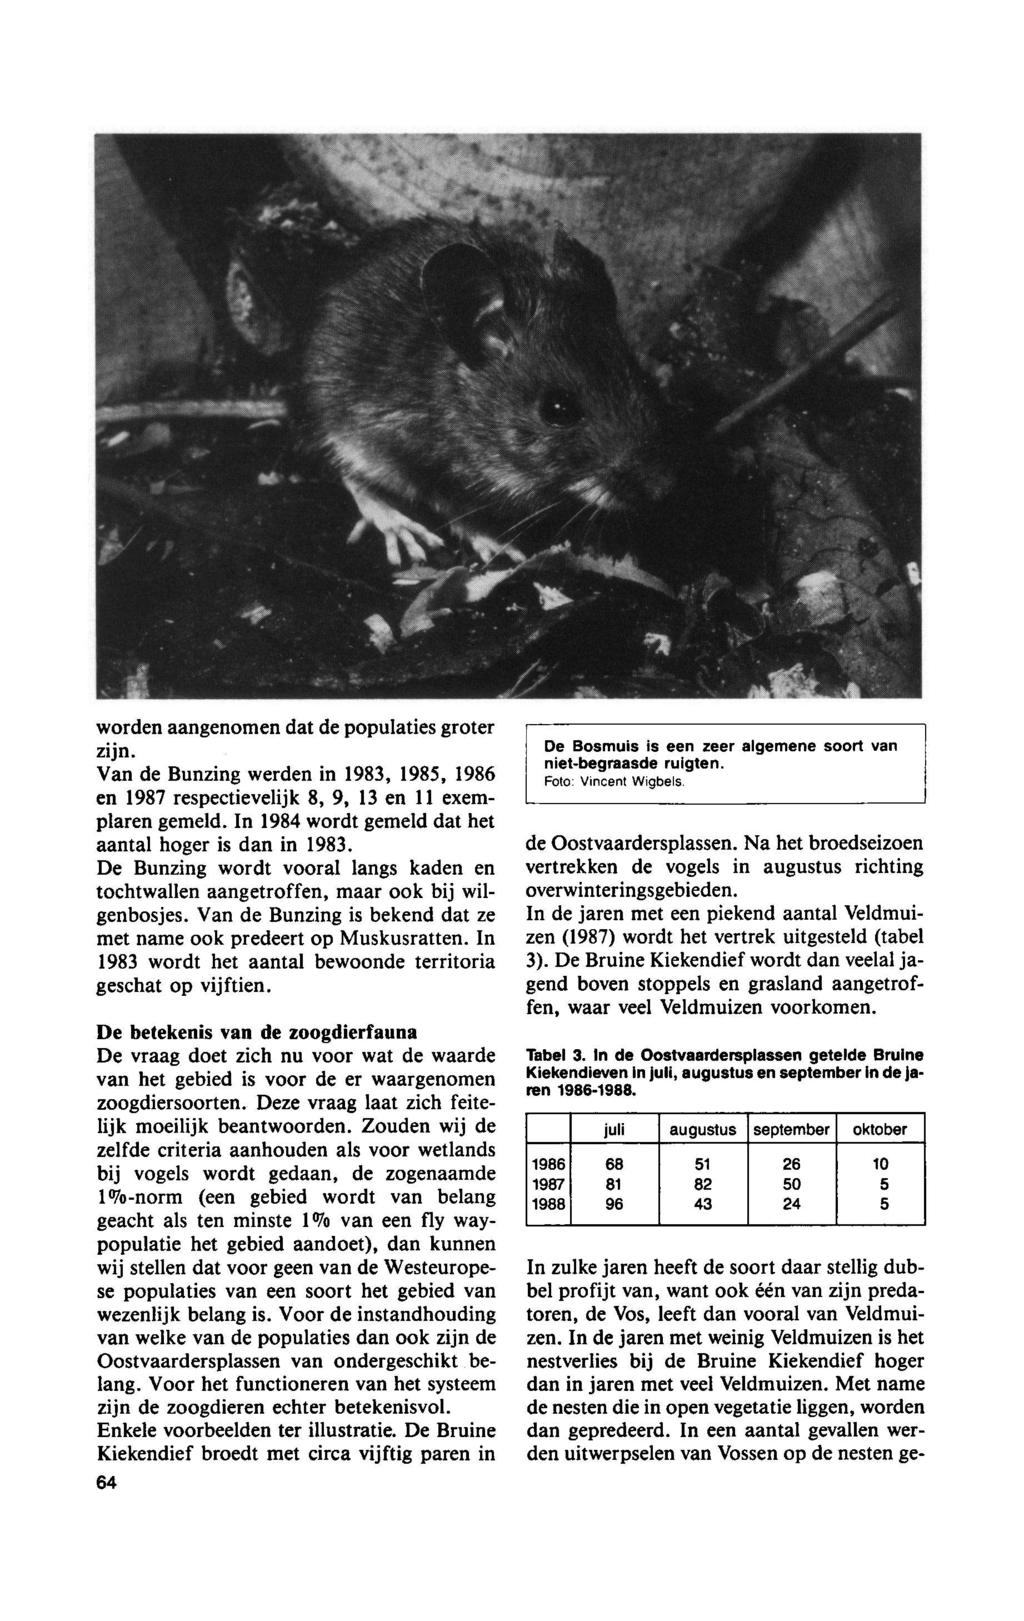 word aangom dat populaties groter zijn. Van Bunzg werd 1983, 1985, 1986 Bosmuis is zeer algeme niet-begraas ruigt. soort 1987 respectievelijk 8, 9, 13 11 exemplar gemeld.